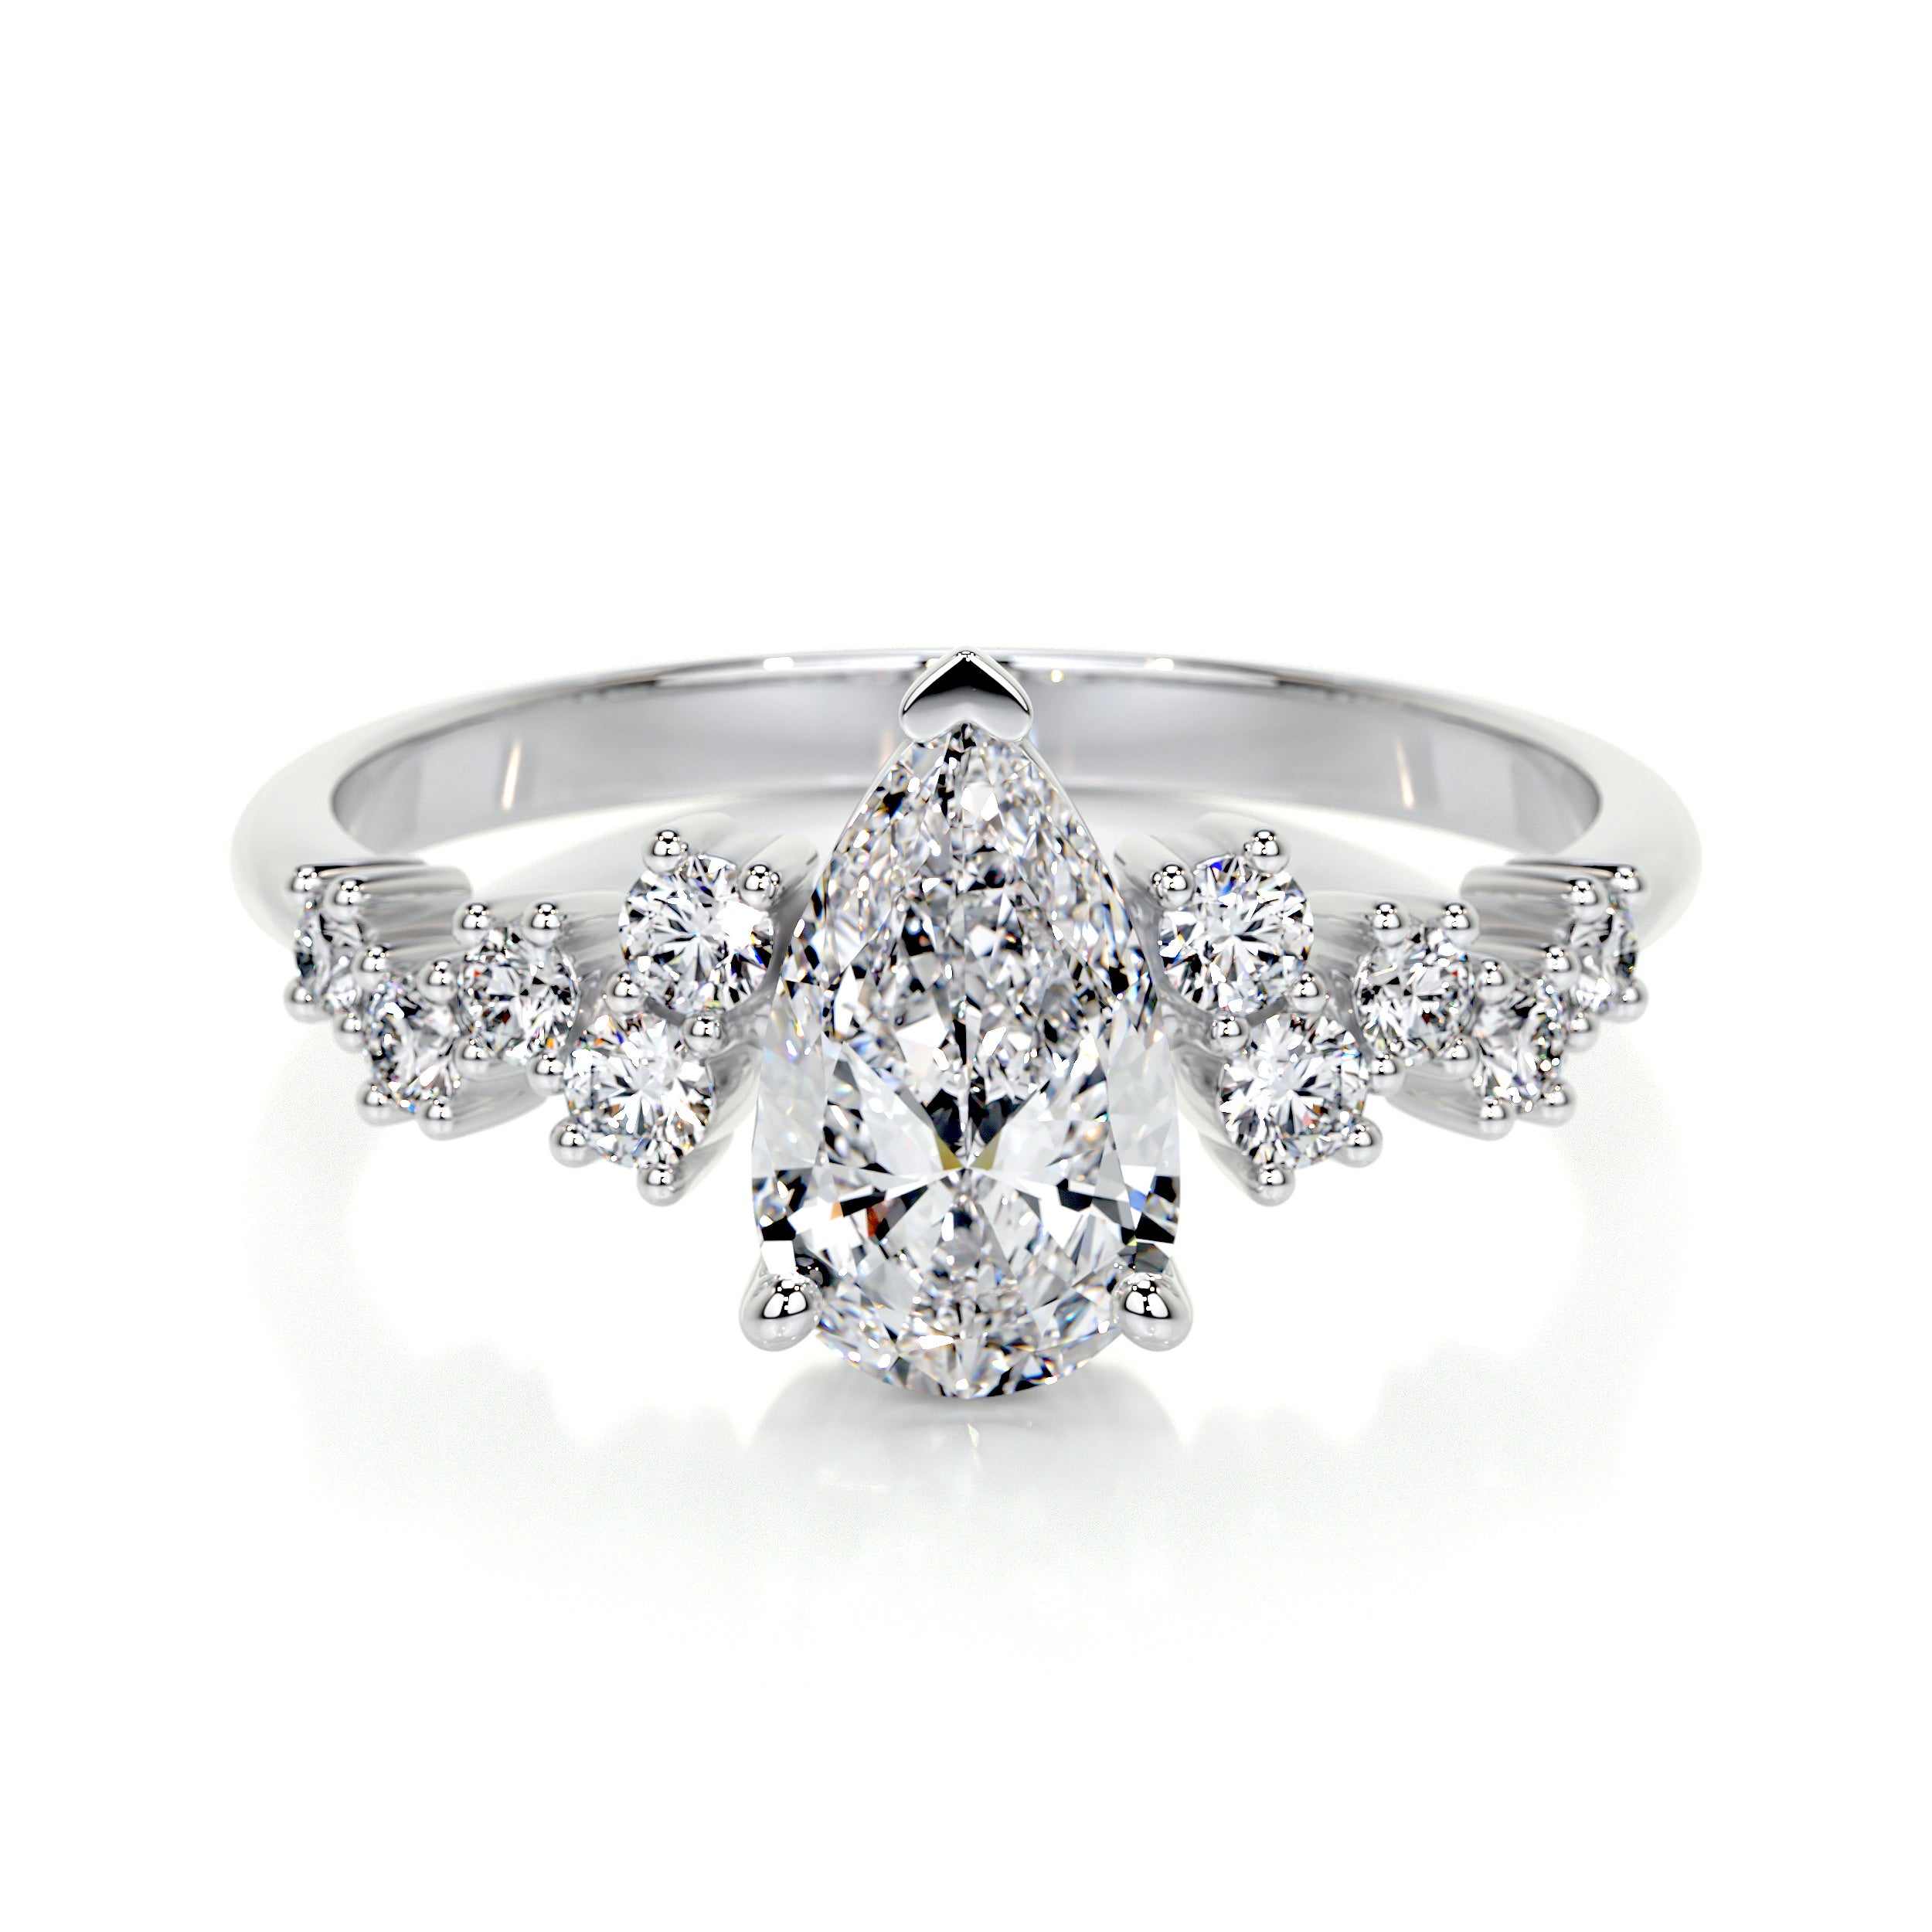 Mabel Lab Grown Diamond Ring -18K White Gold